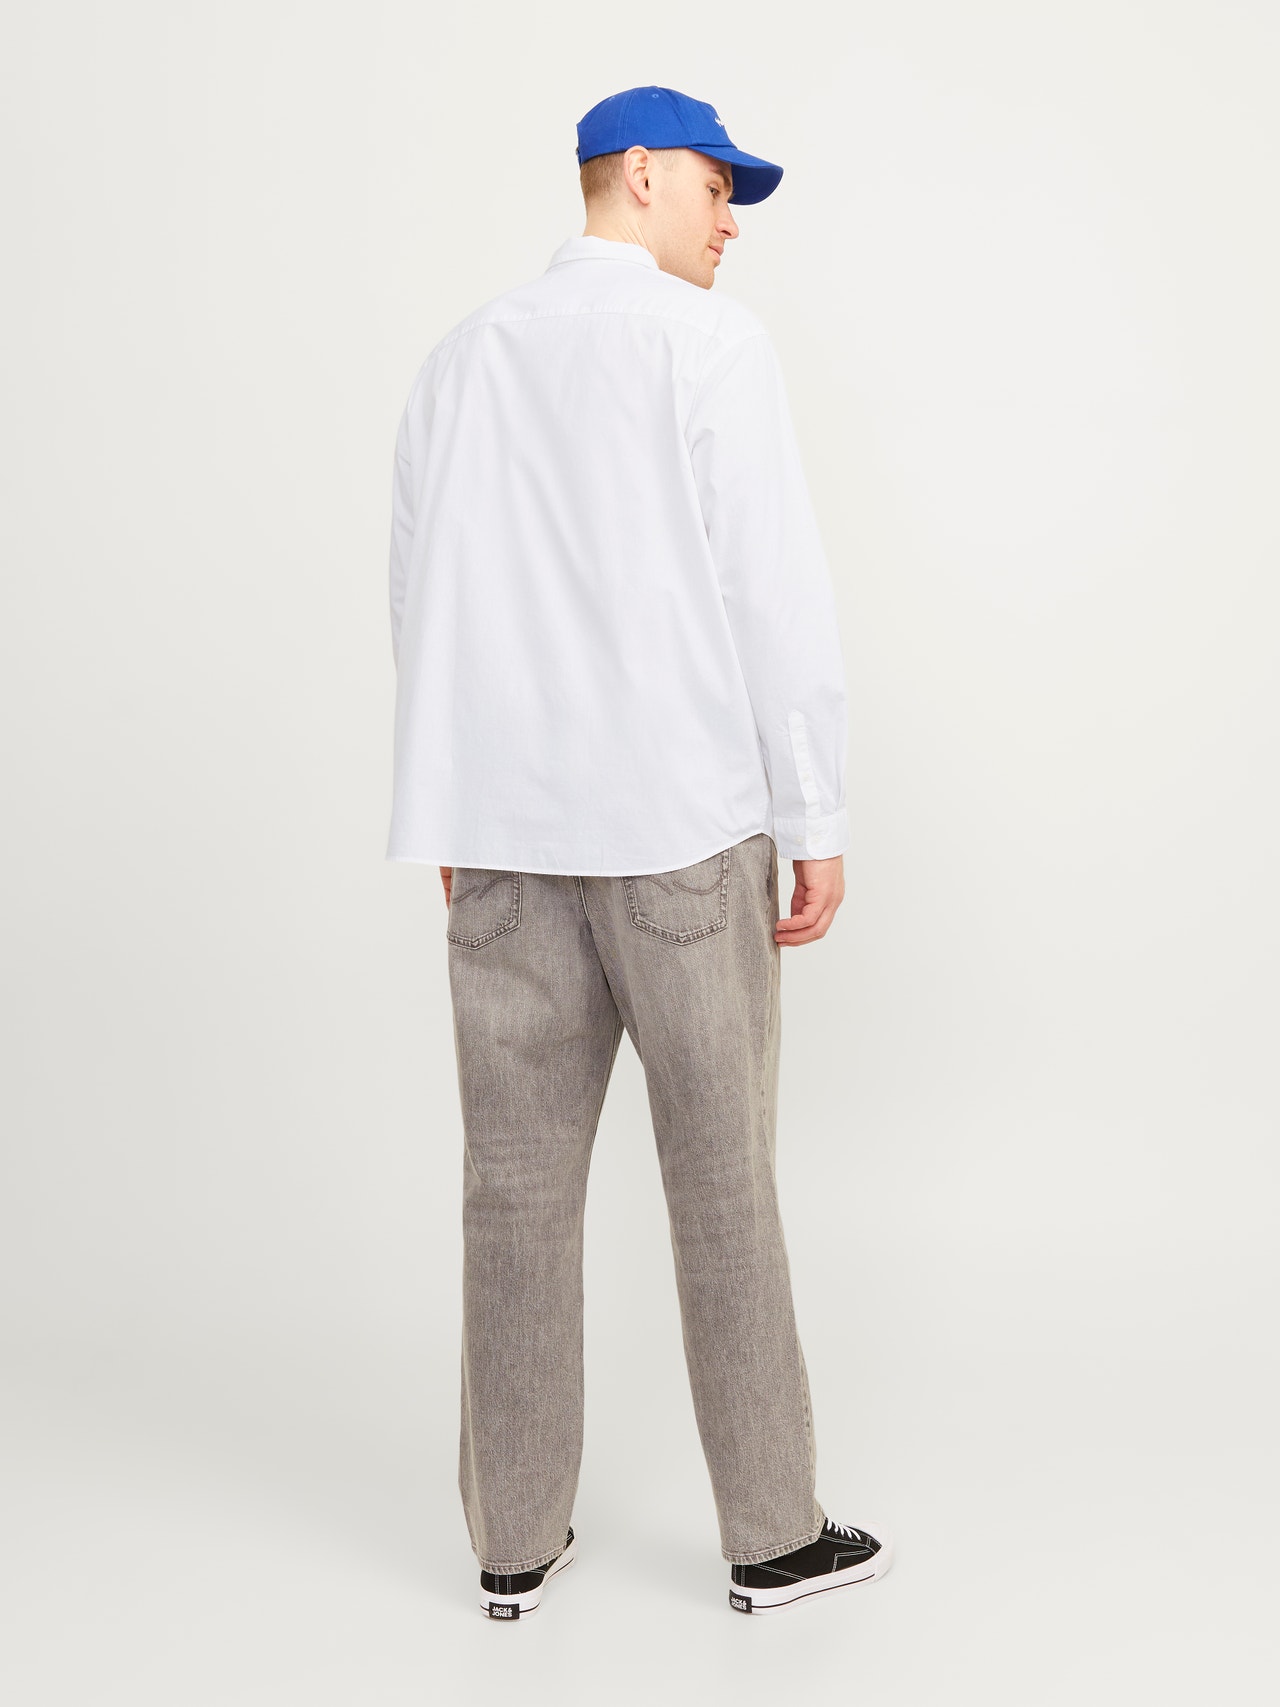 Jack & Jones Plus Size Slim Fit Formeel overhemd -White - 12254850